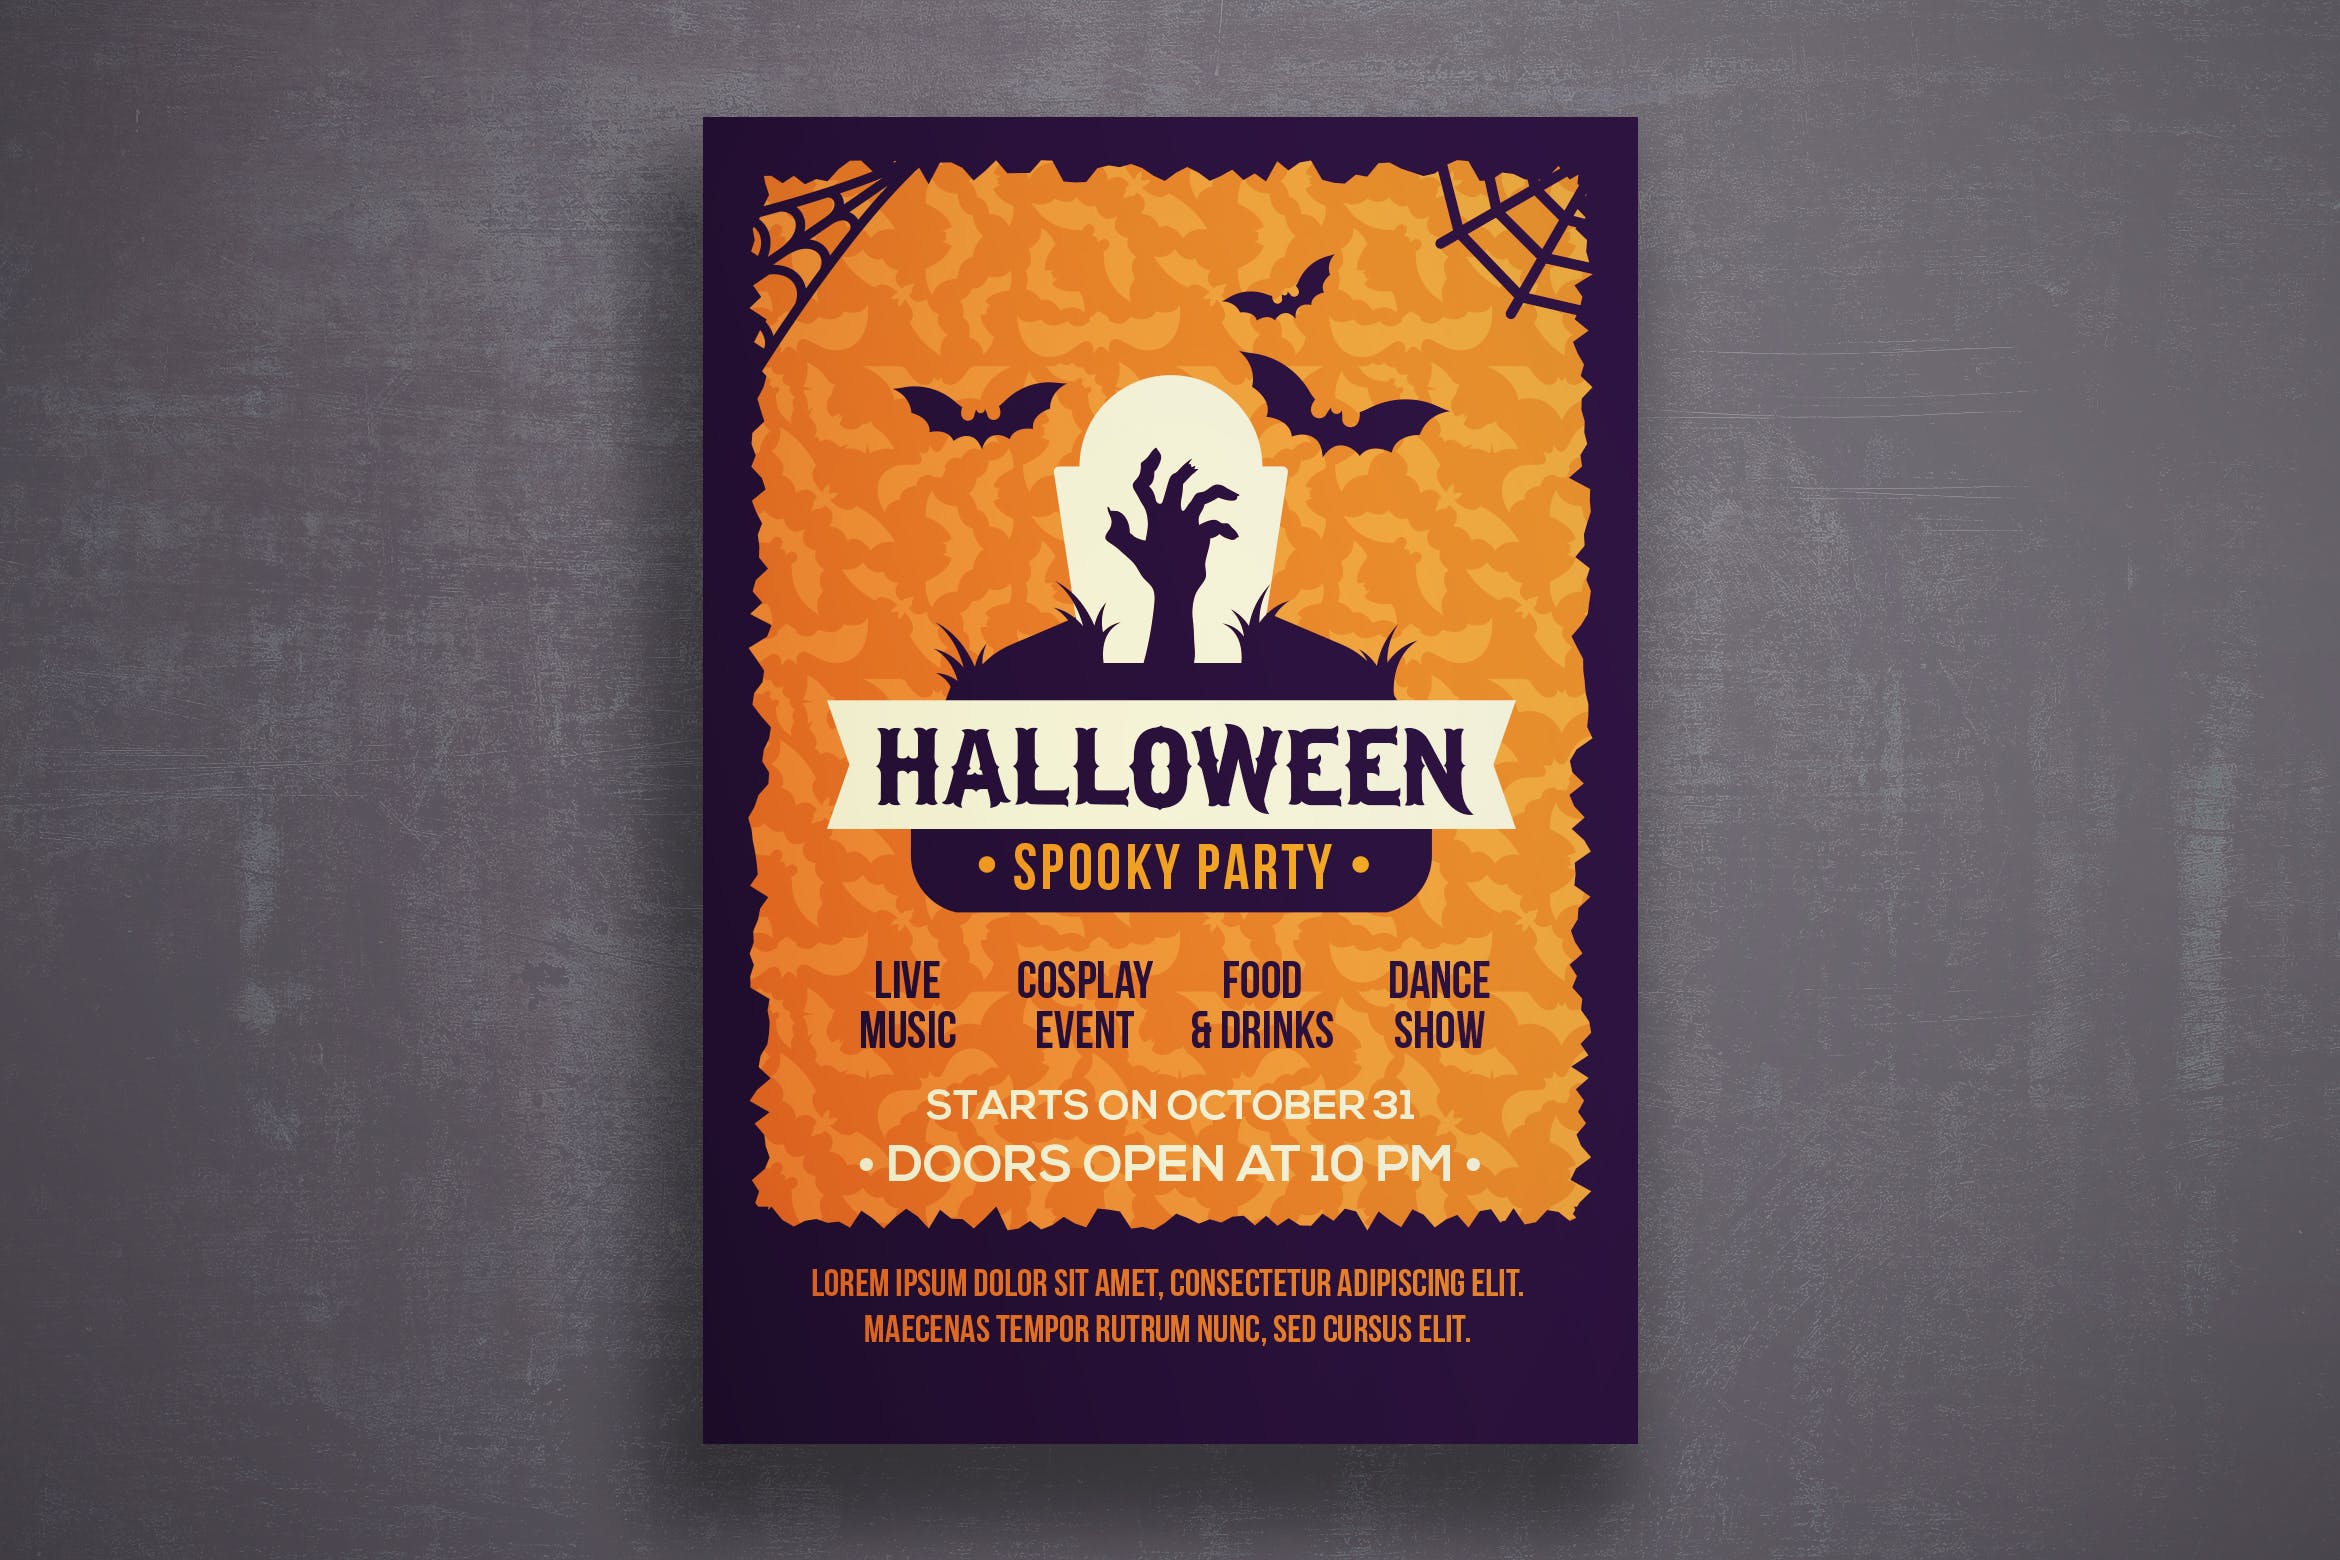 万圣节恐怖之夜活动邀请海报传单第一素材精选PSD模板v5 Halloween flyer template插图